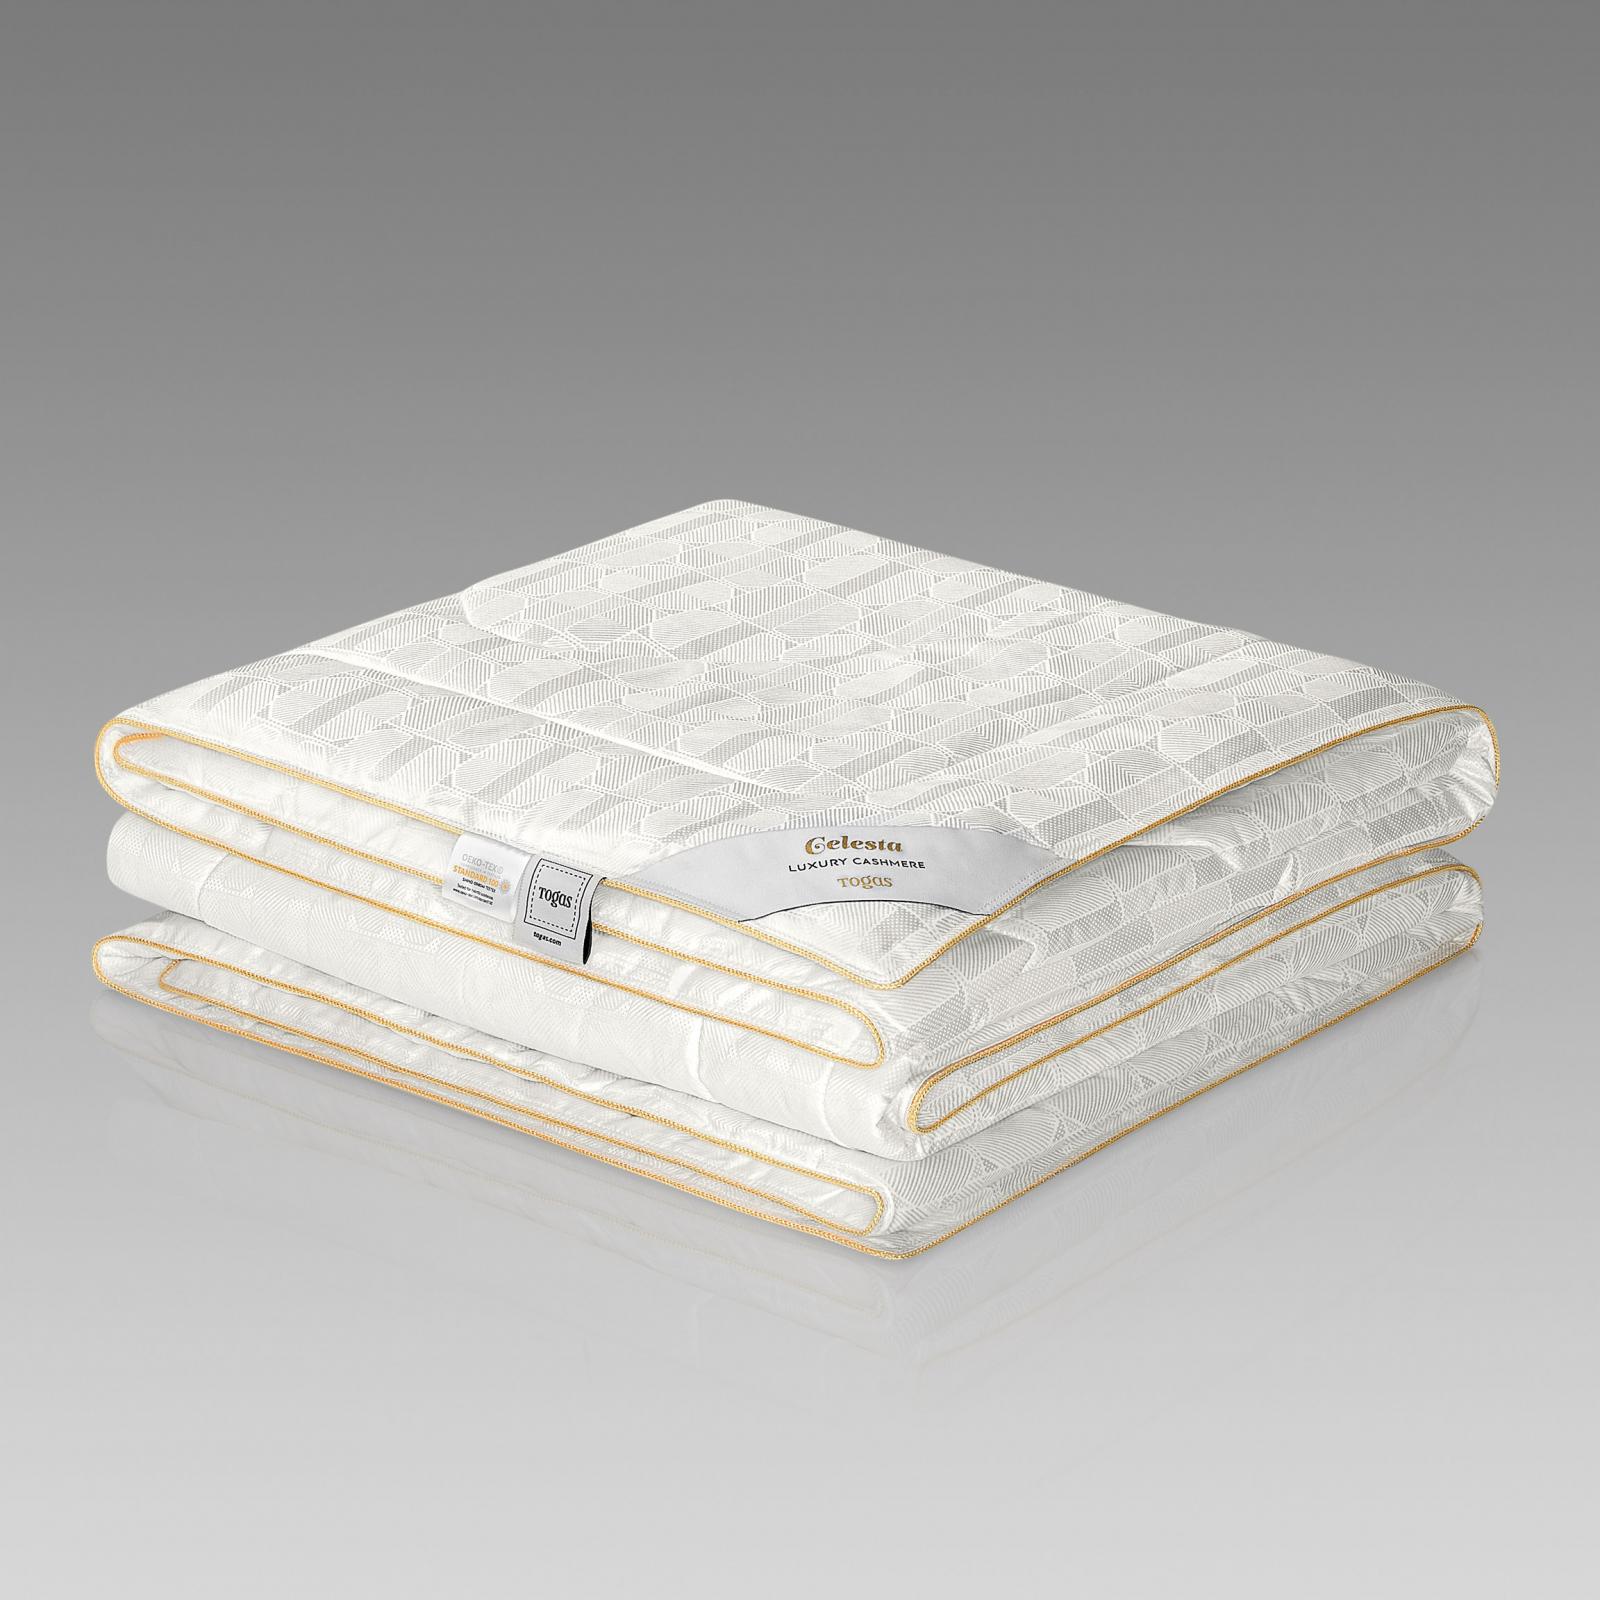 Одеяло Togas Селеста 200х210 см одеяло togas лира белое 200х210 см 20 04 17 0092